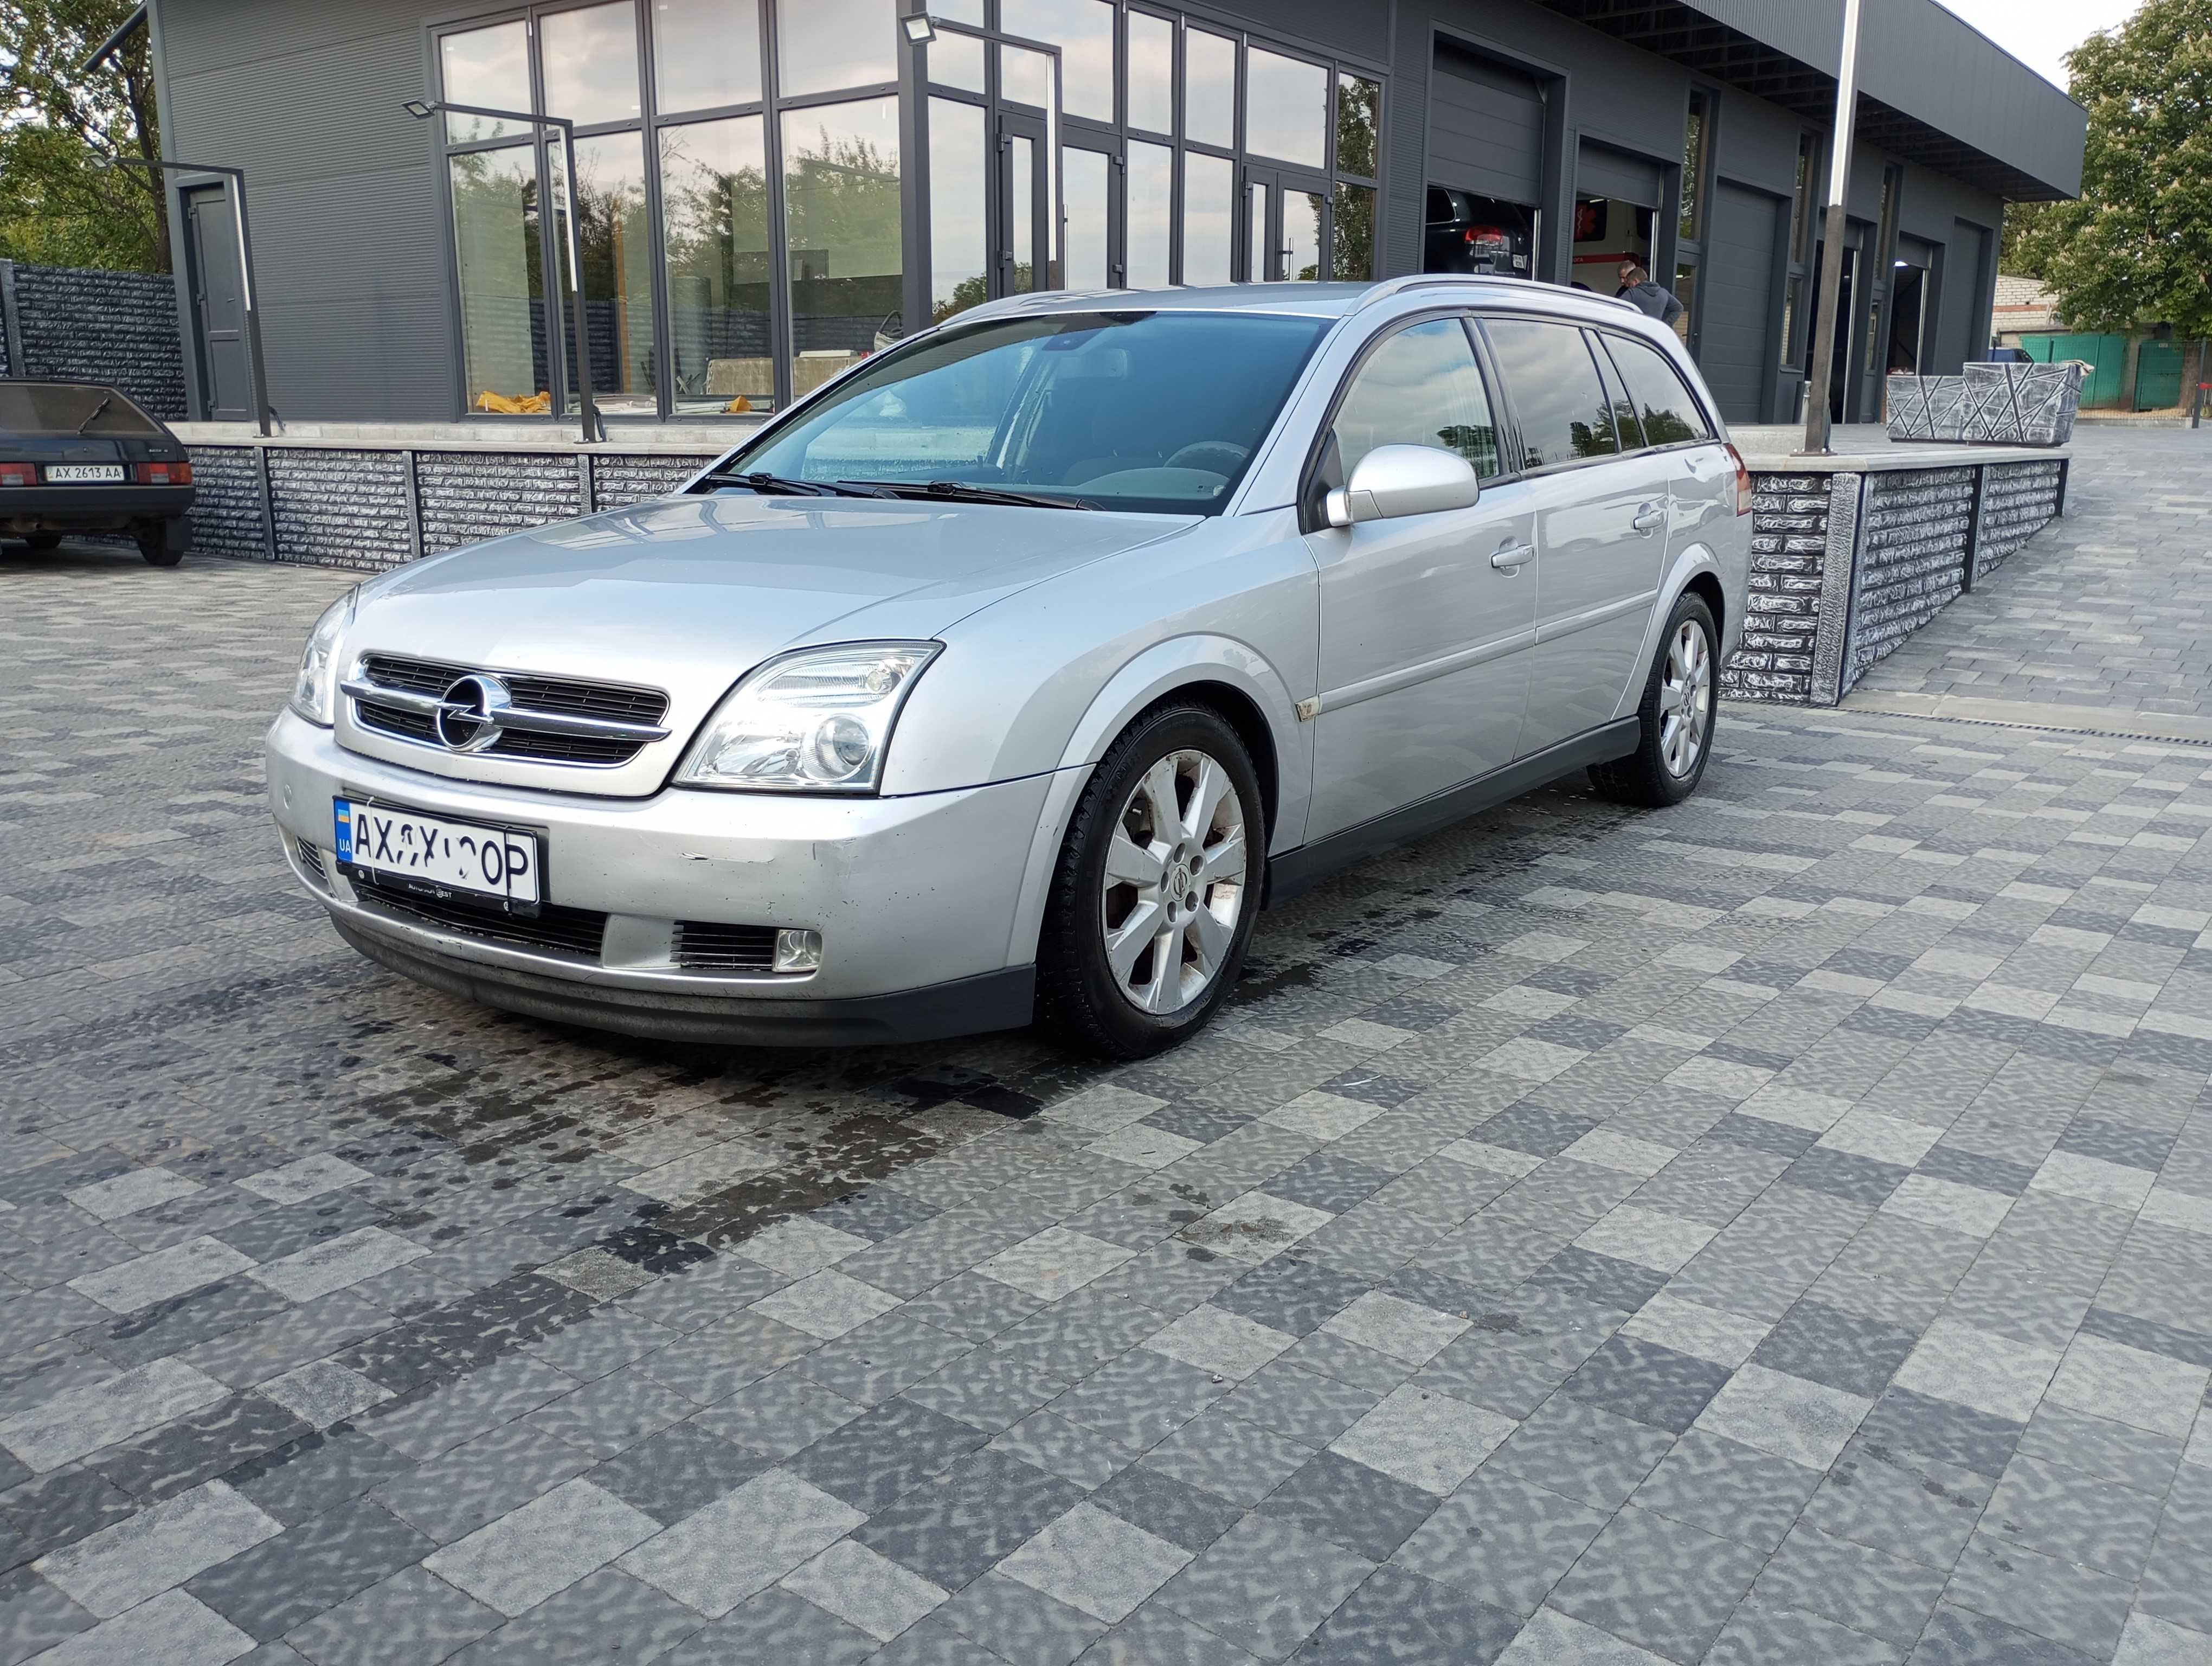 Opel Vectra C 2.2TD 2004 г на тимчасовій реєстрації (для ЗСУЇ